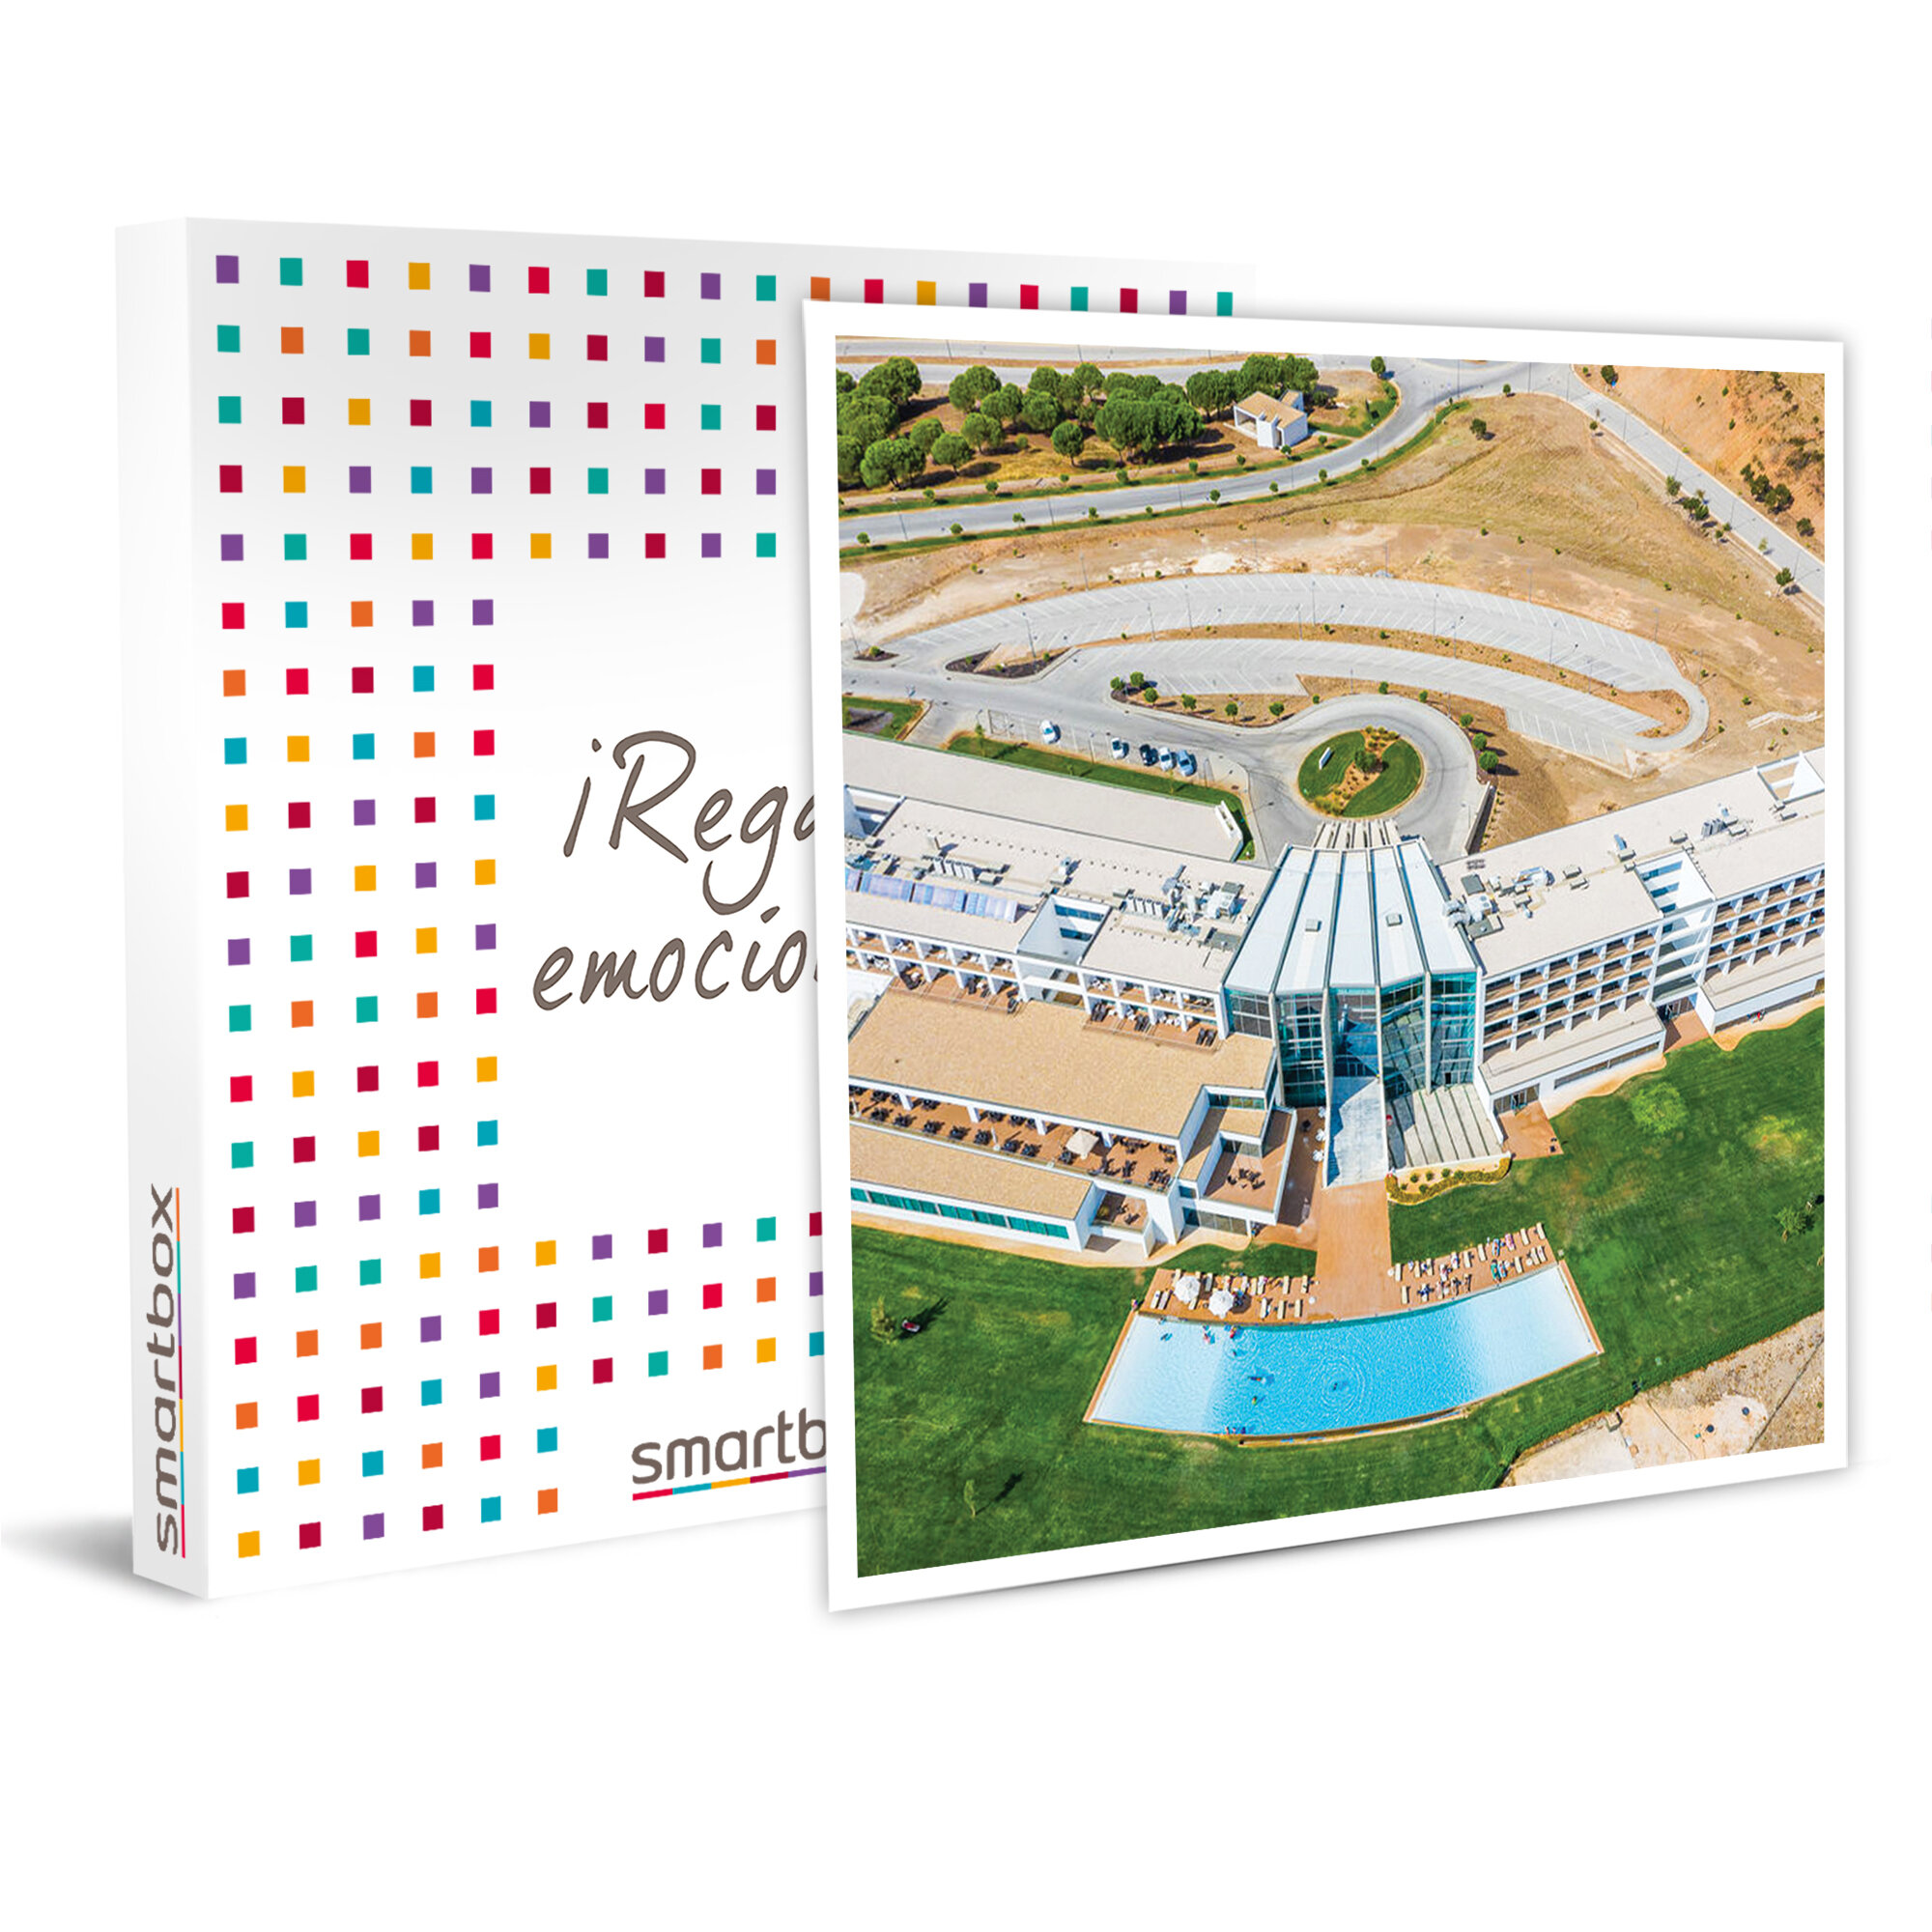 Escapada a Portugal: 1 noche en suite con acceso a spa Algarve Race Resort Hotel 5*